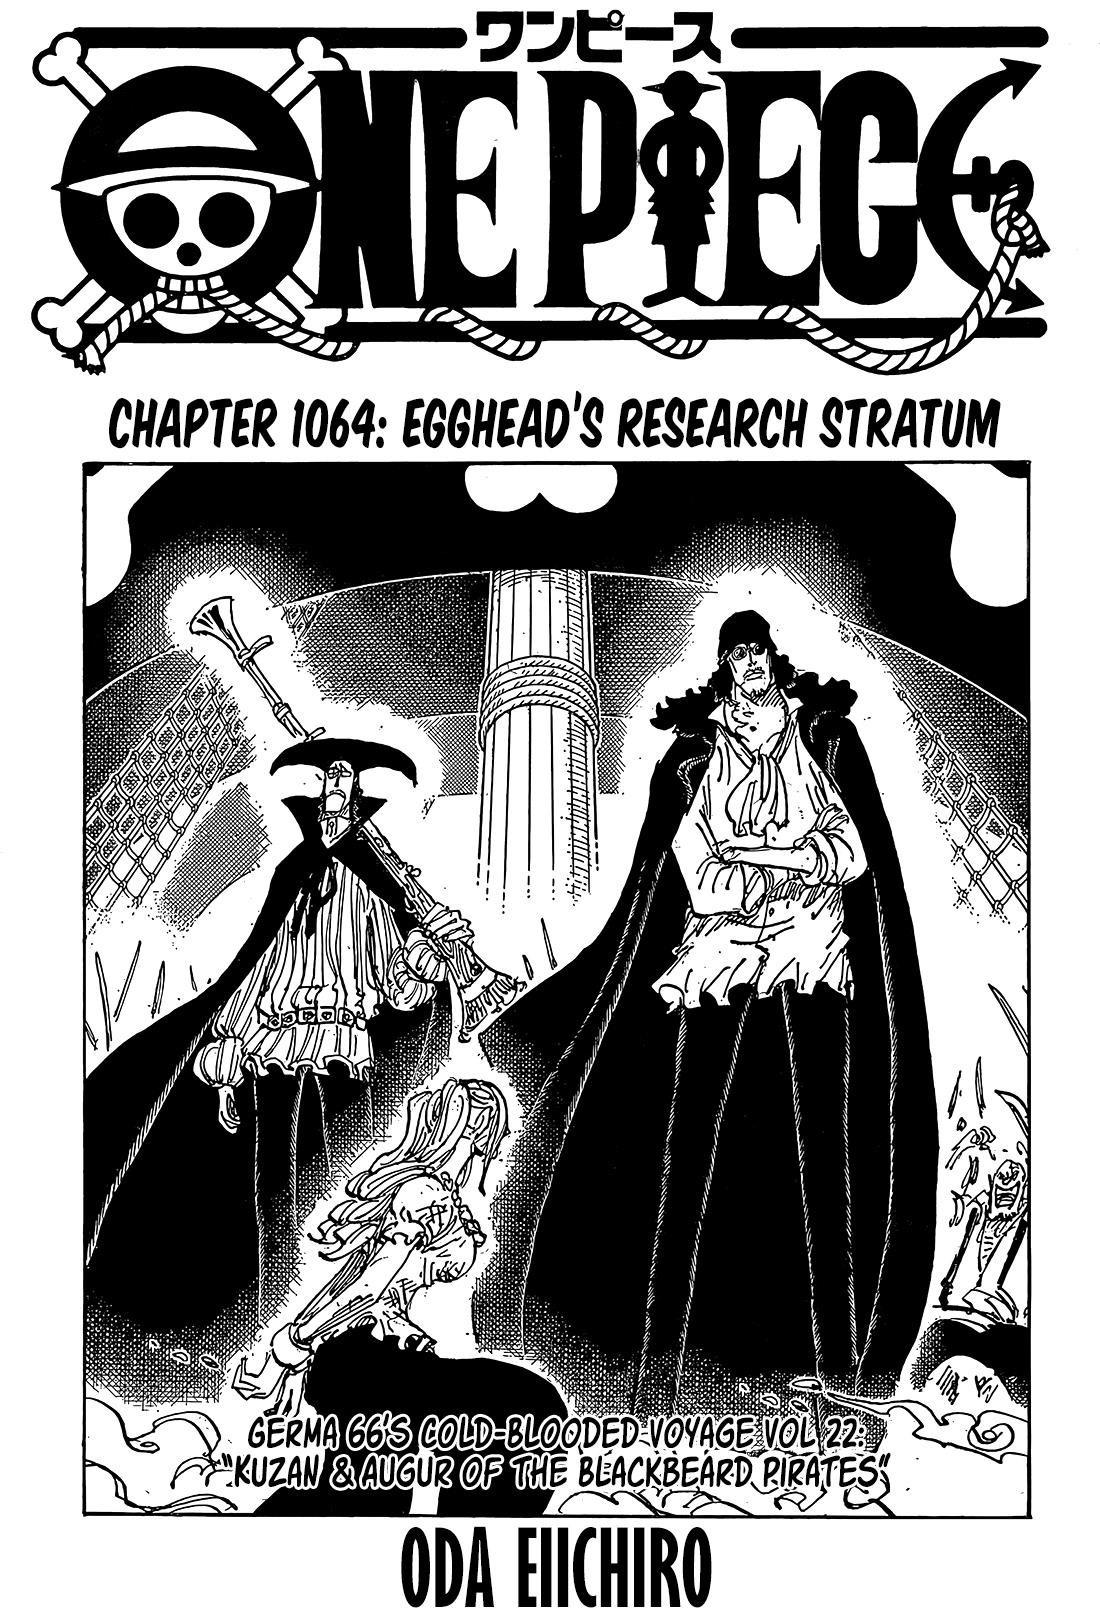 Read One Piece Chapter 1045 on Mangakakalot